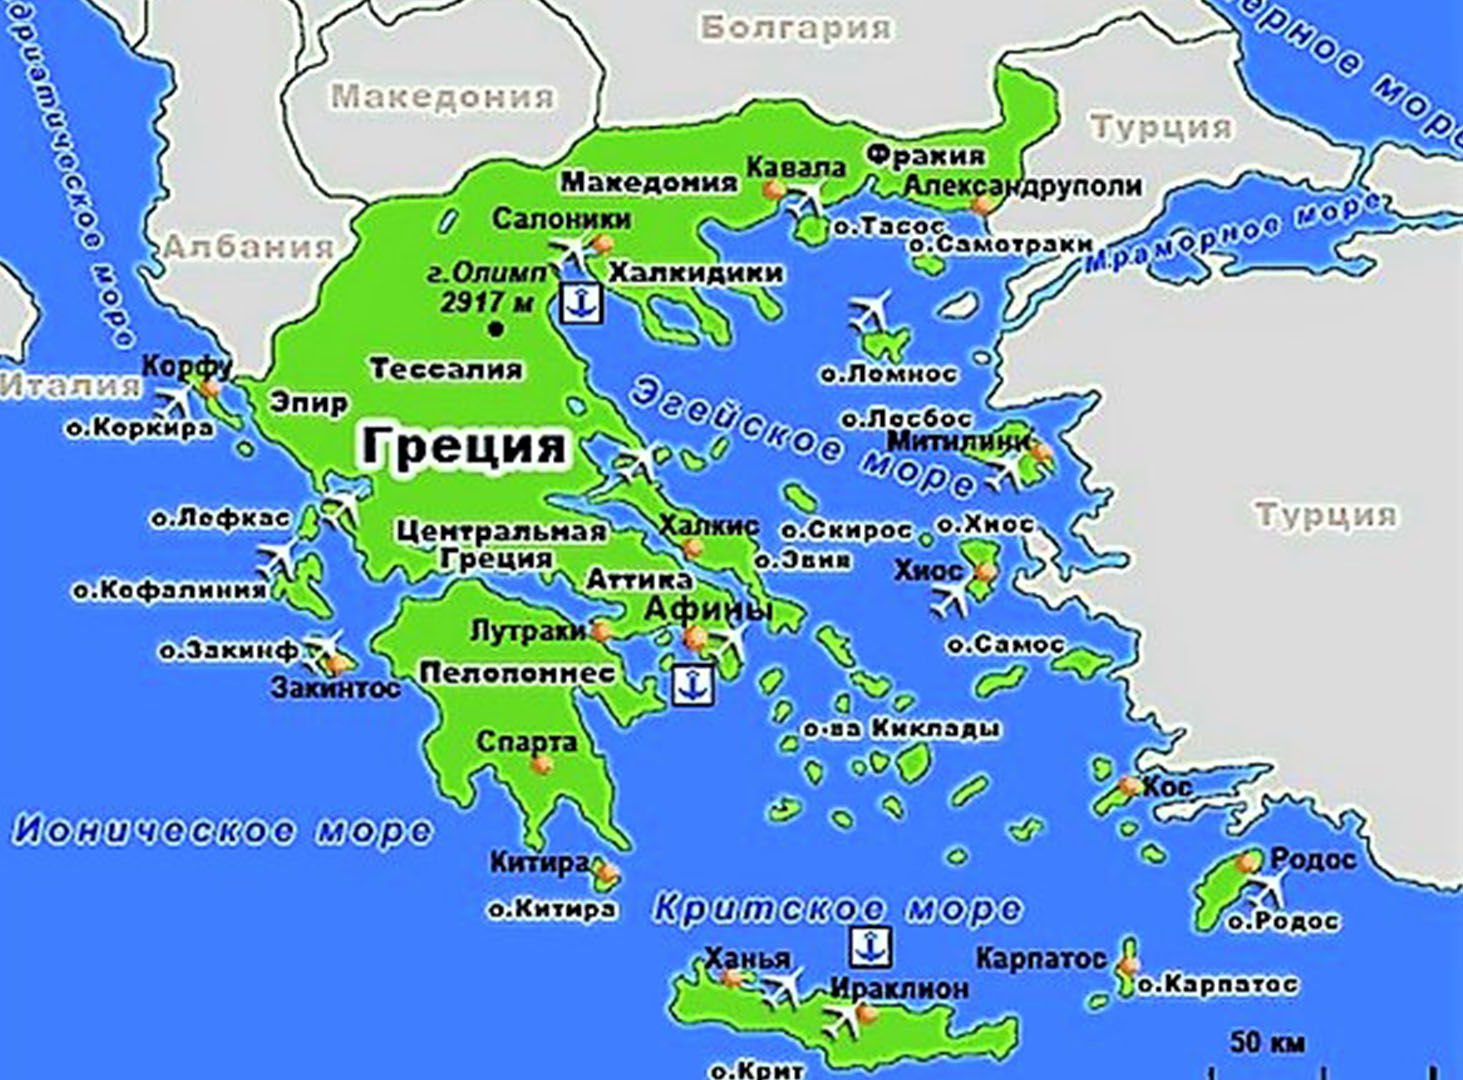 Где лучше отдыхать на родосе или крите в греции - | статьи по туризму от votpusk.ru